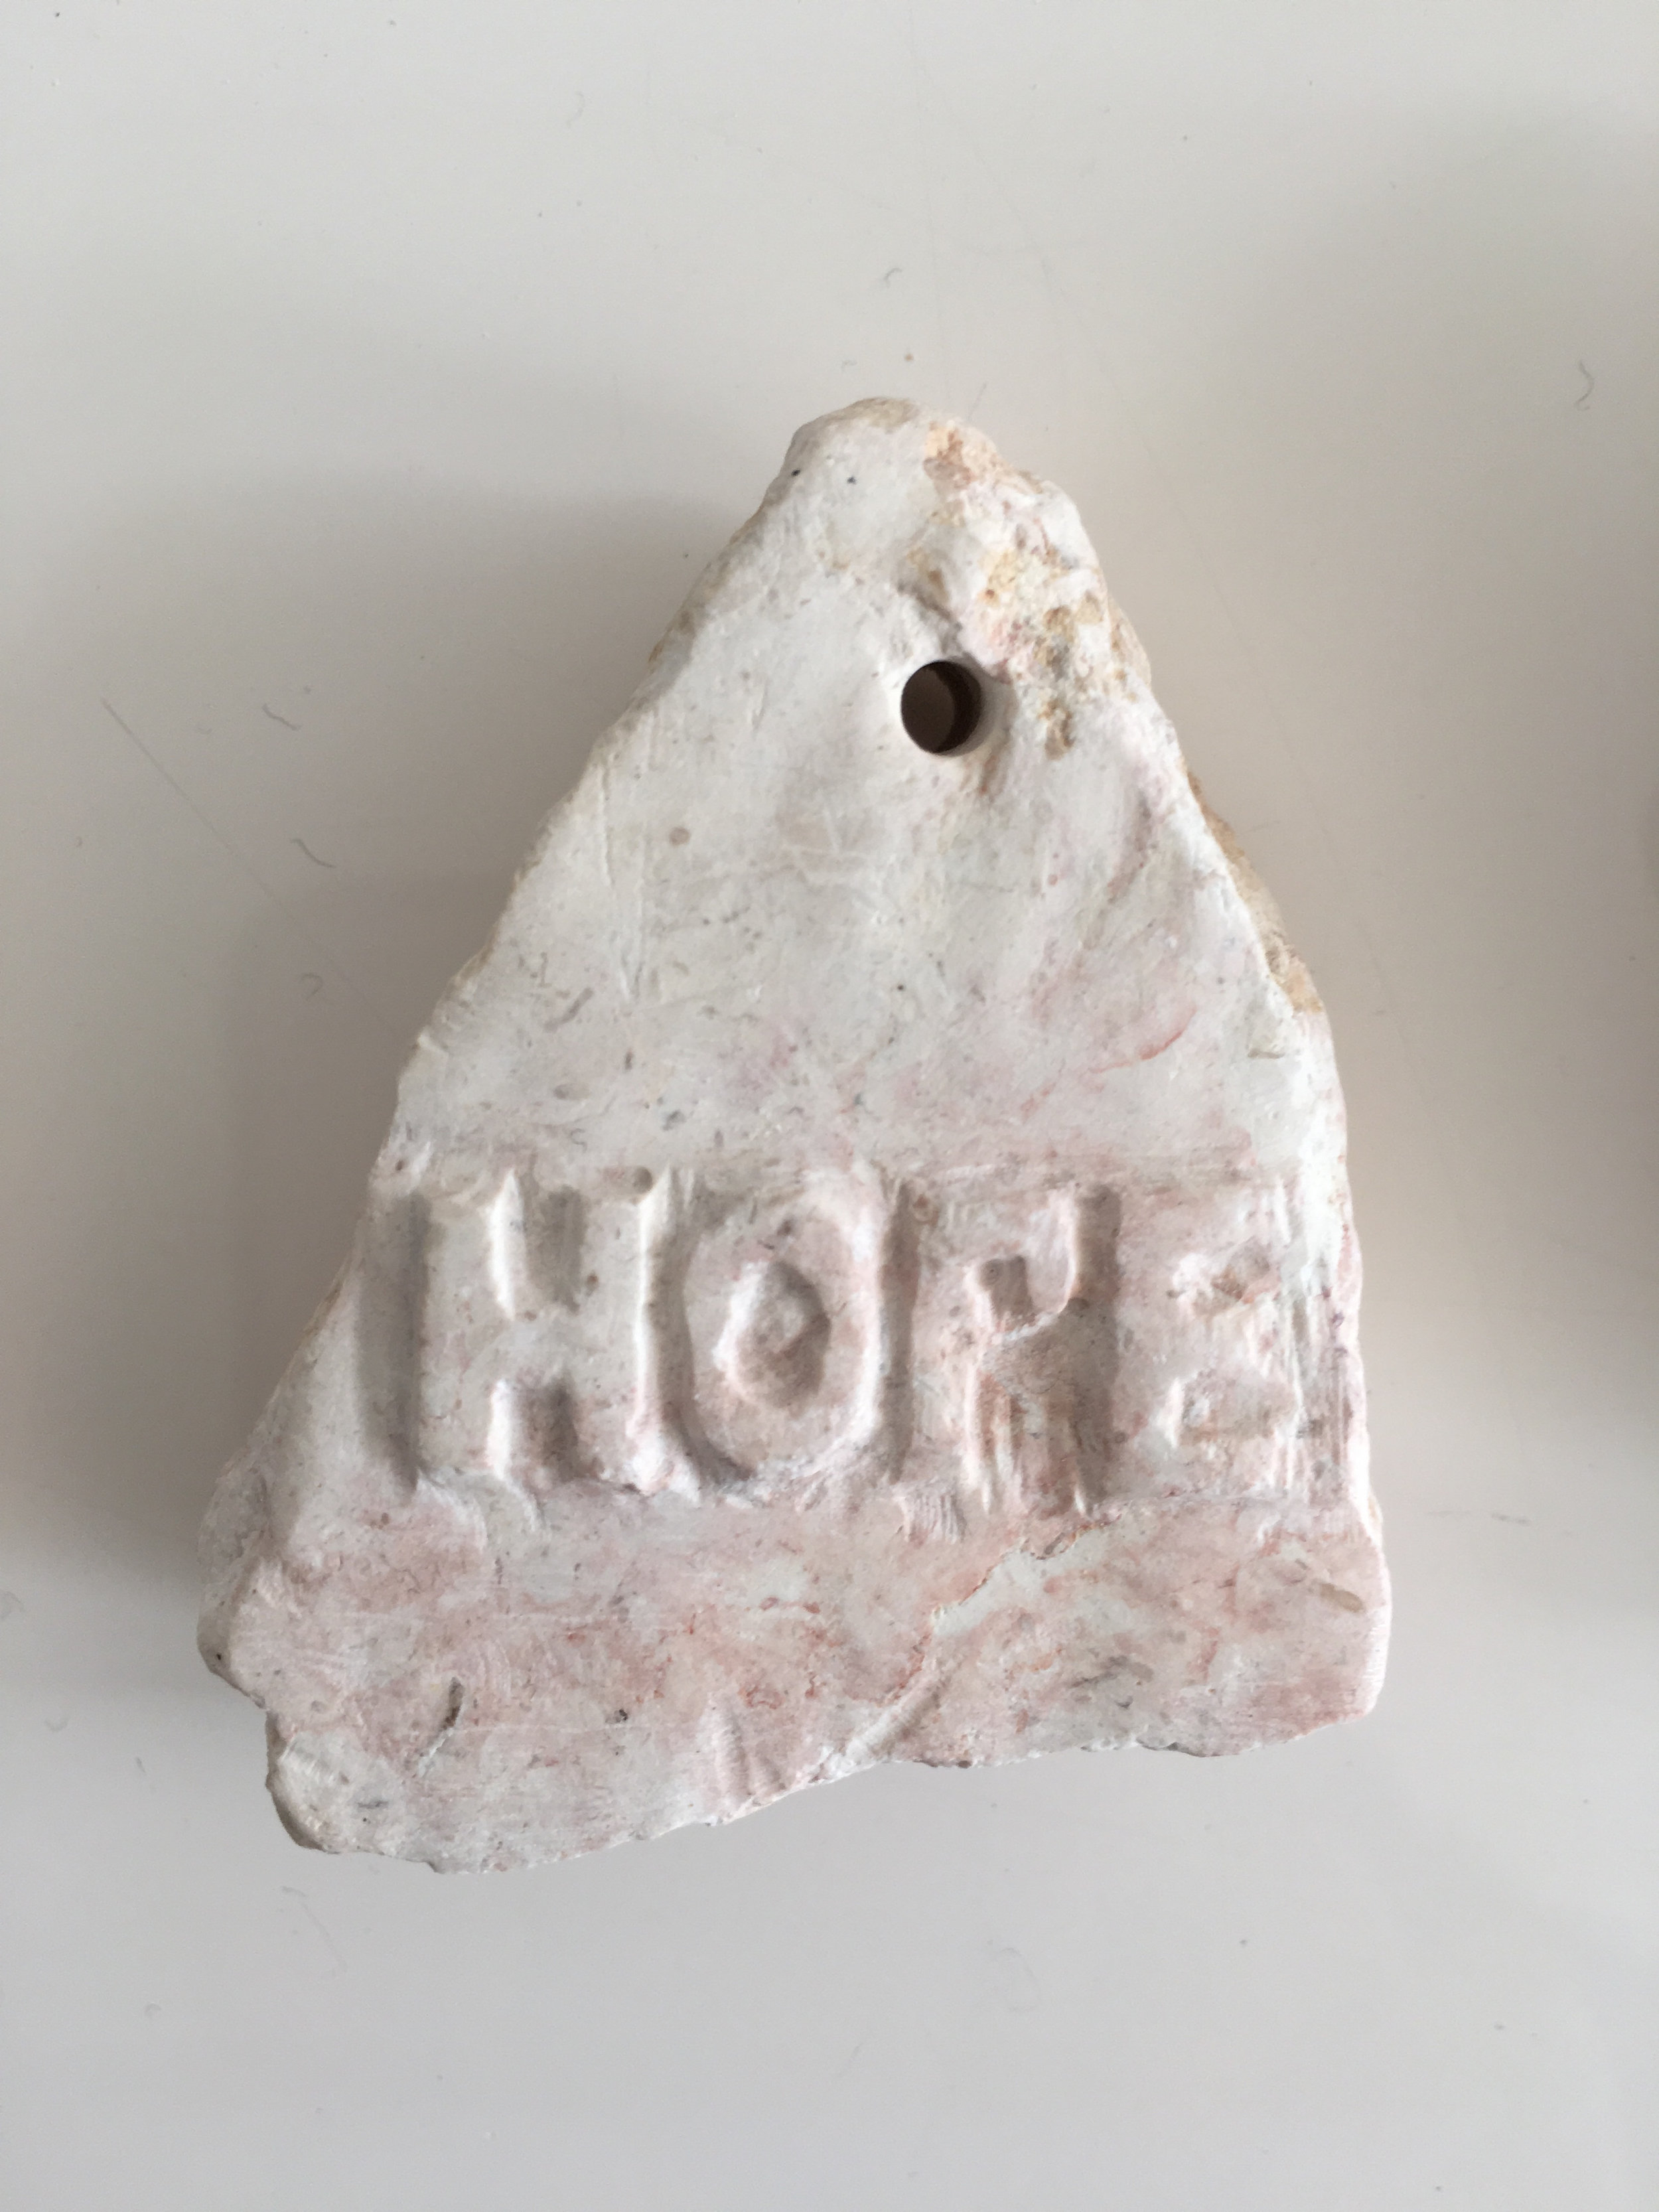  Hope stone by Tariq 